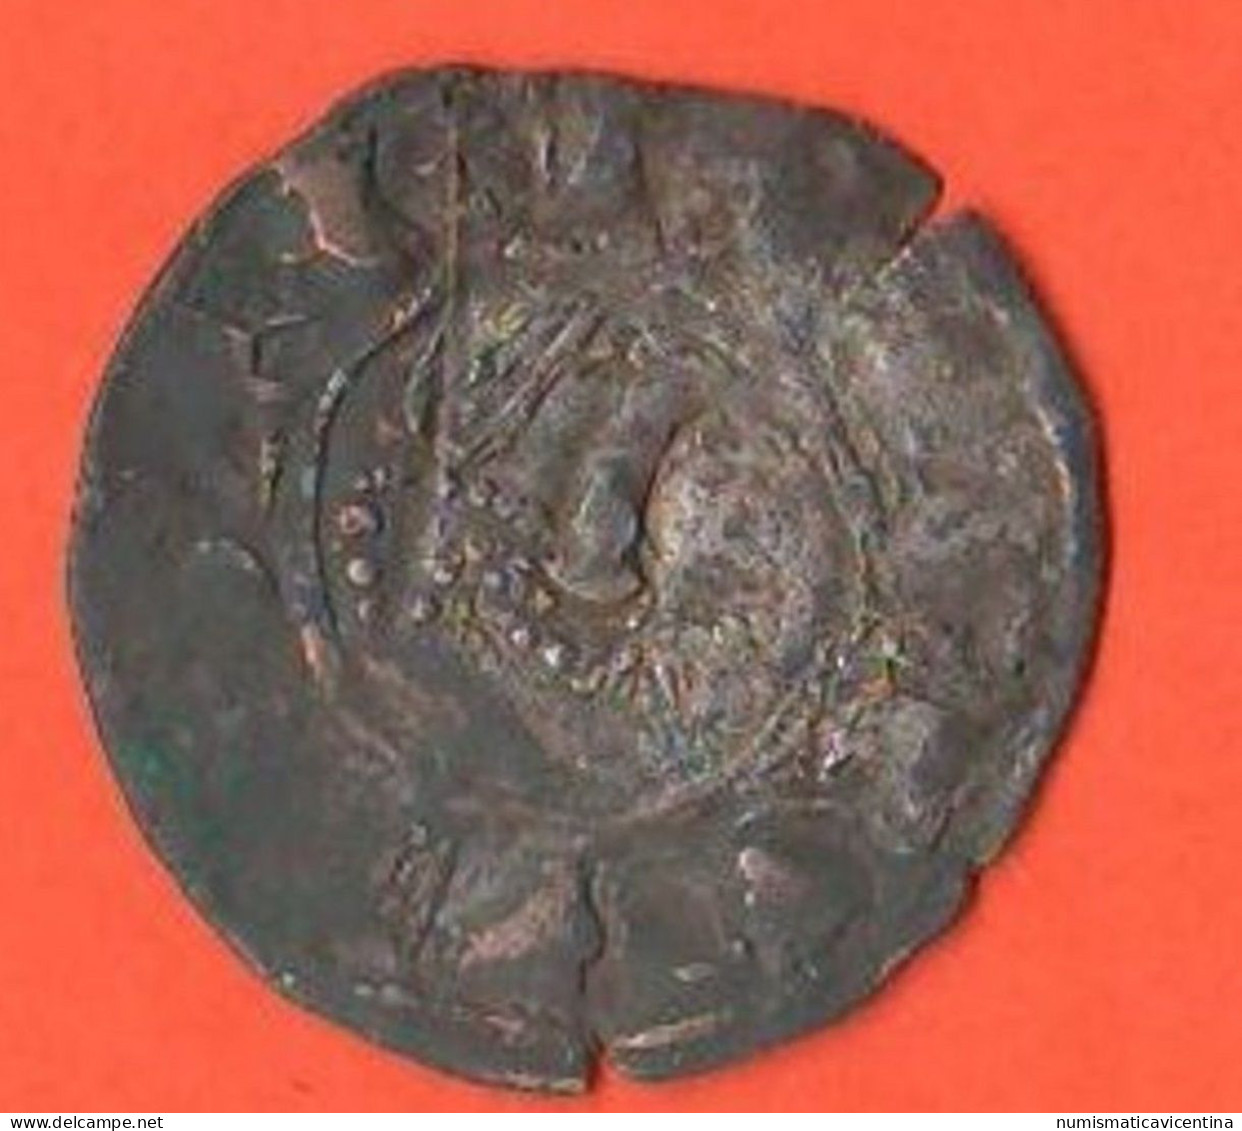 Espana UN Dinero Burgos Castilla Castiglia Spain Spagna Espagne Silver Coin - Provinciale Munten